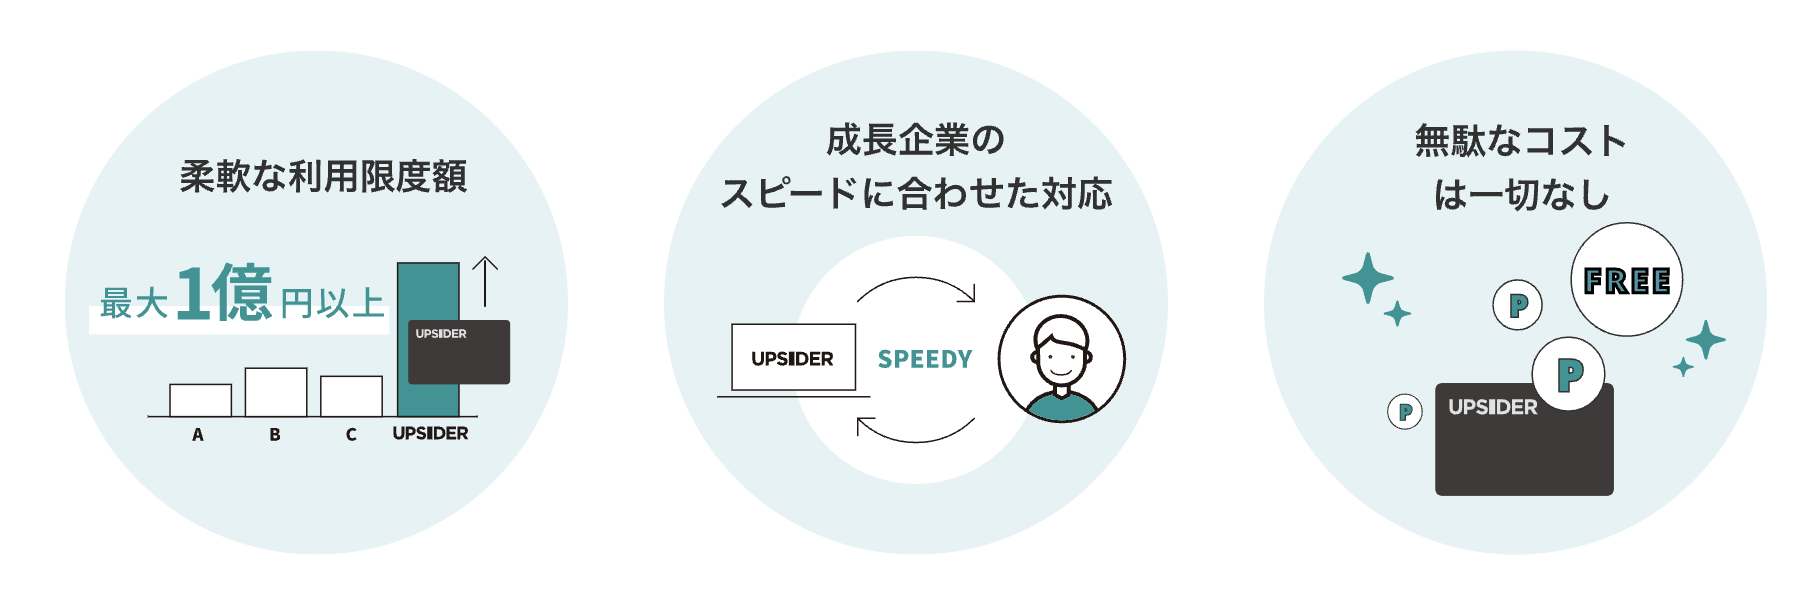 UPSIDER公式サイト,限度額が最大1億円以上